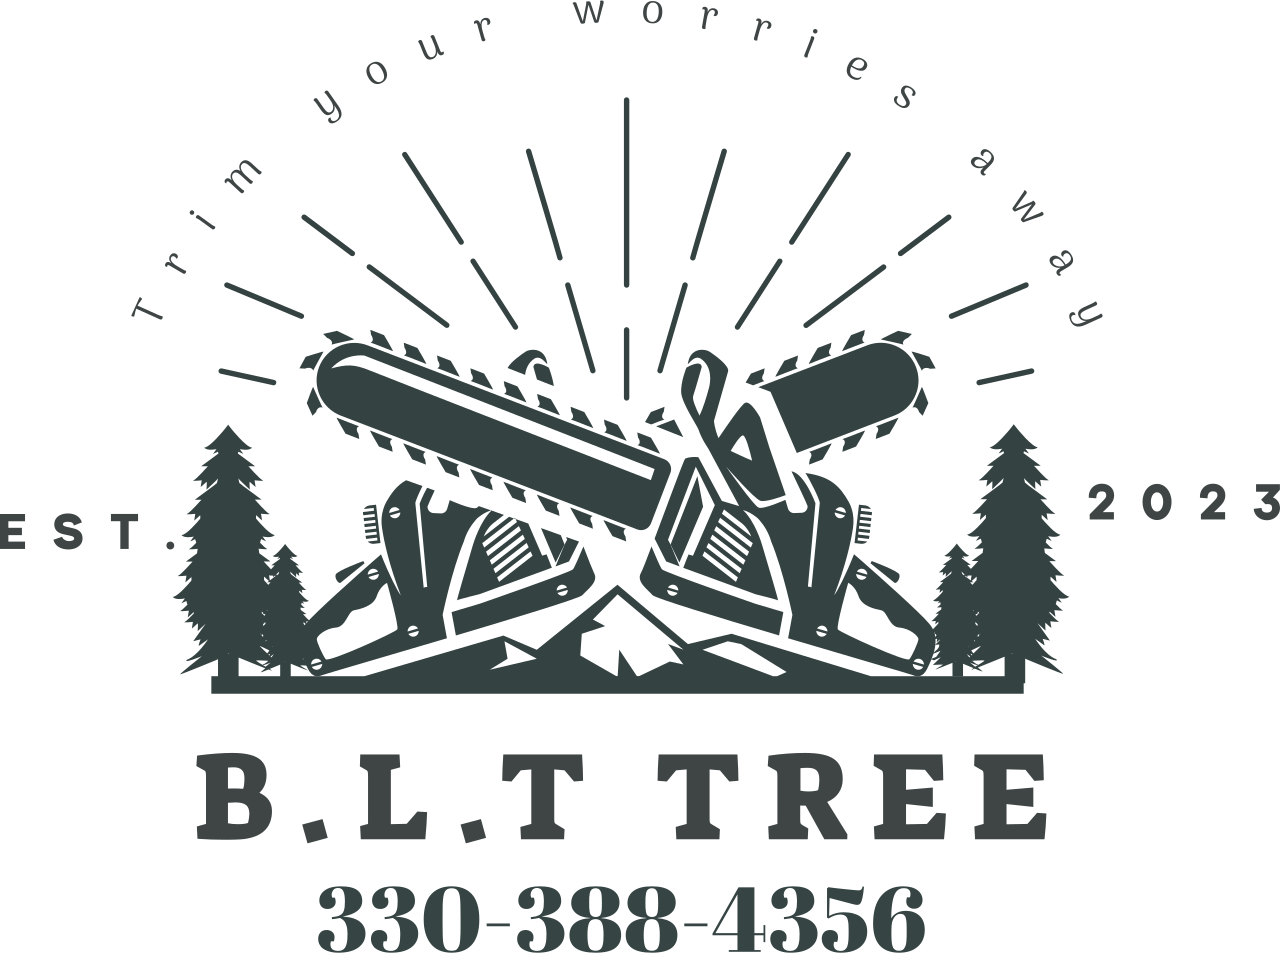 B.L.T Tree's logo